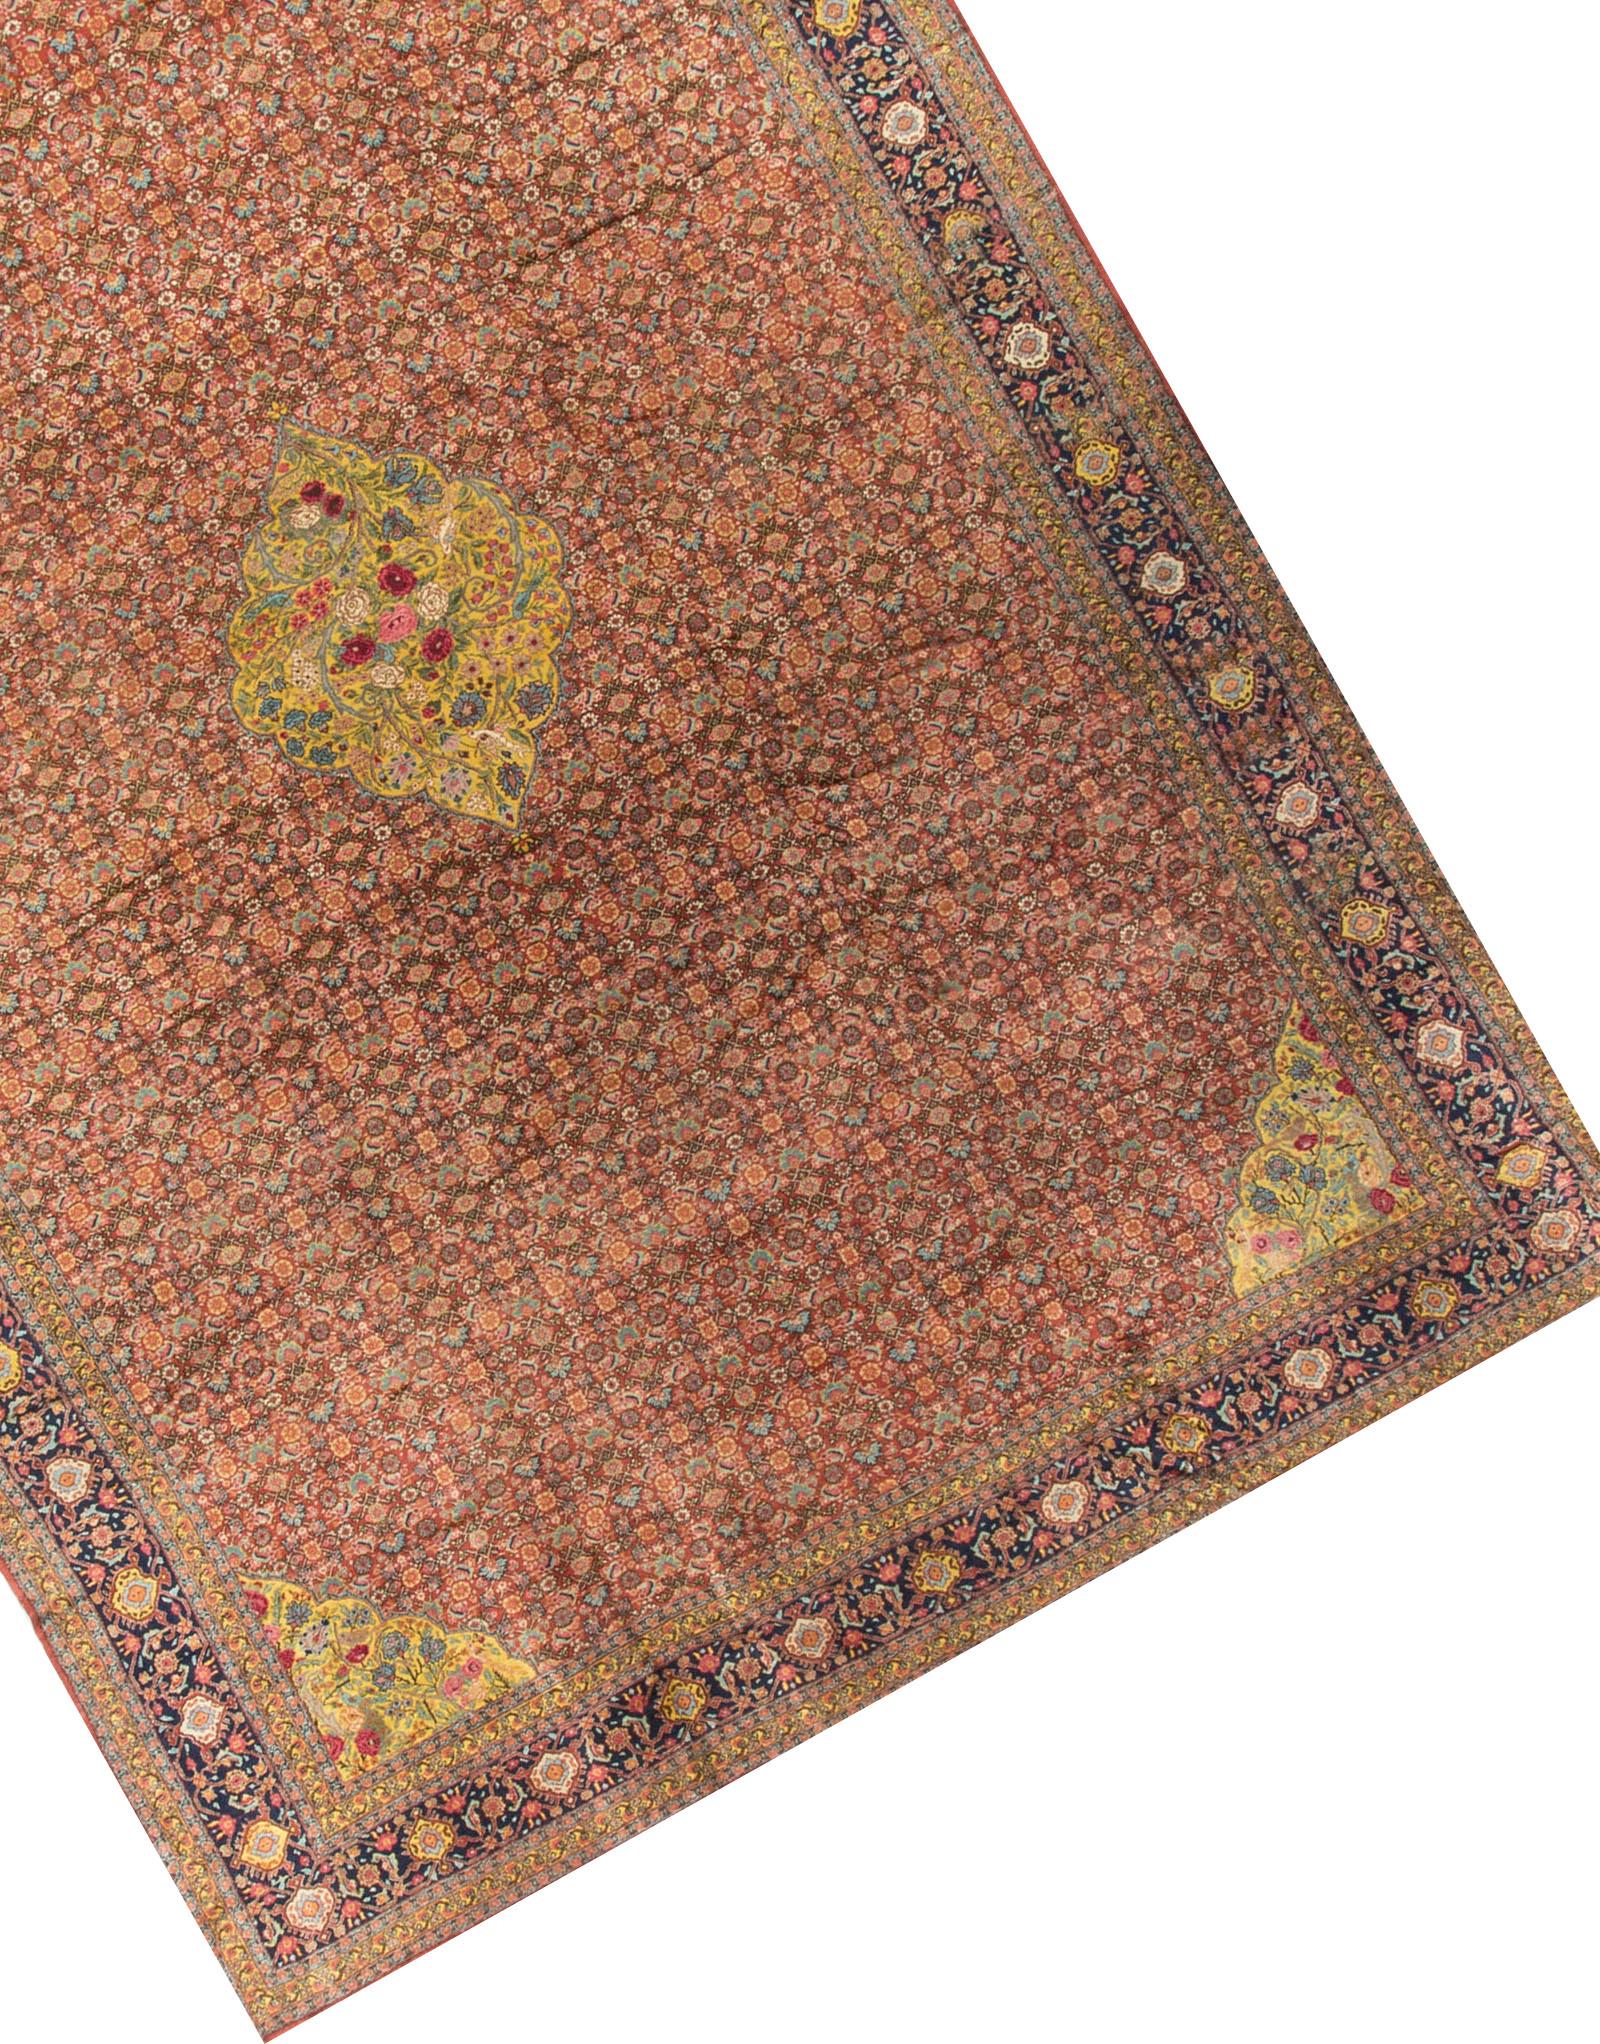 Antique Persian Senneh Rug Carpet, circa 1890 In Good Condition For Sale In Secaucus, NJ